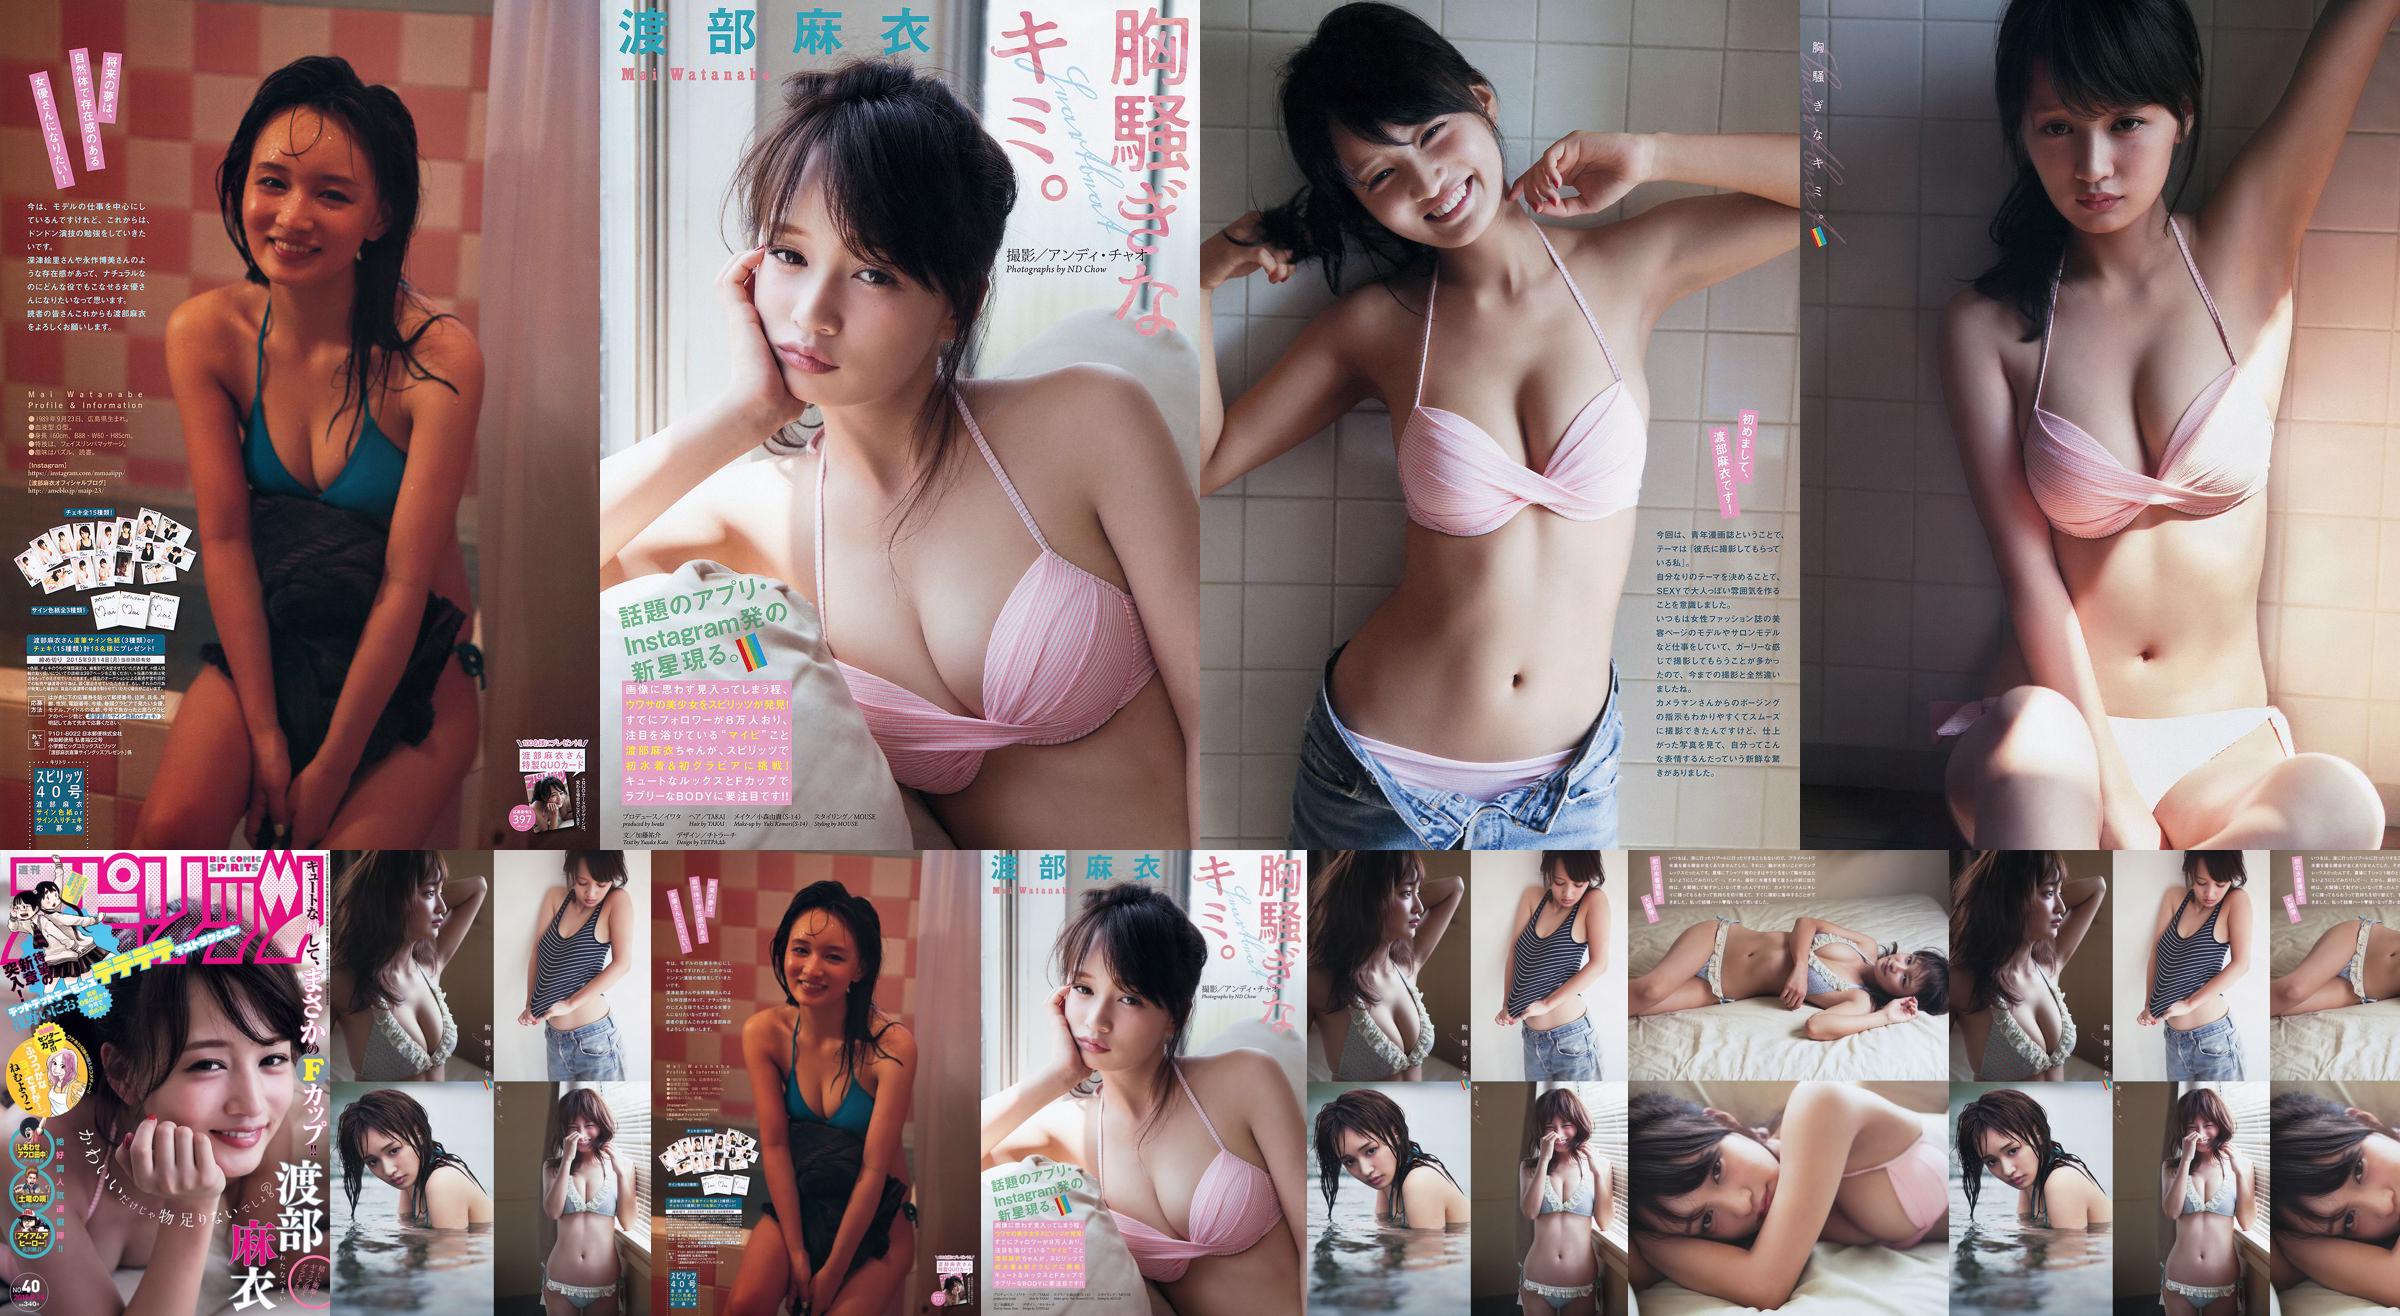 [Wöchentliche große Comic-Spirituosen] Watanabe Mai 2015 Nr. 40 Fotomagazin No.679352 Seite 4